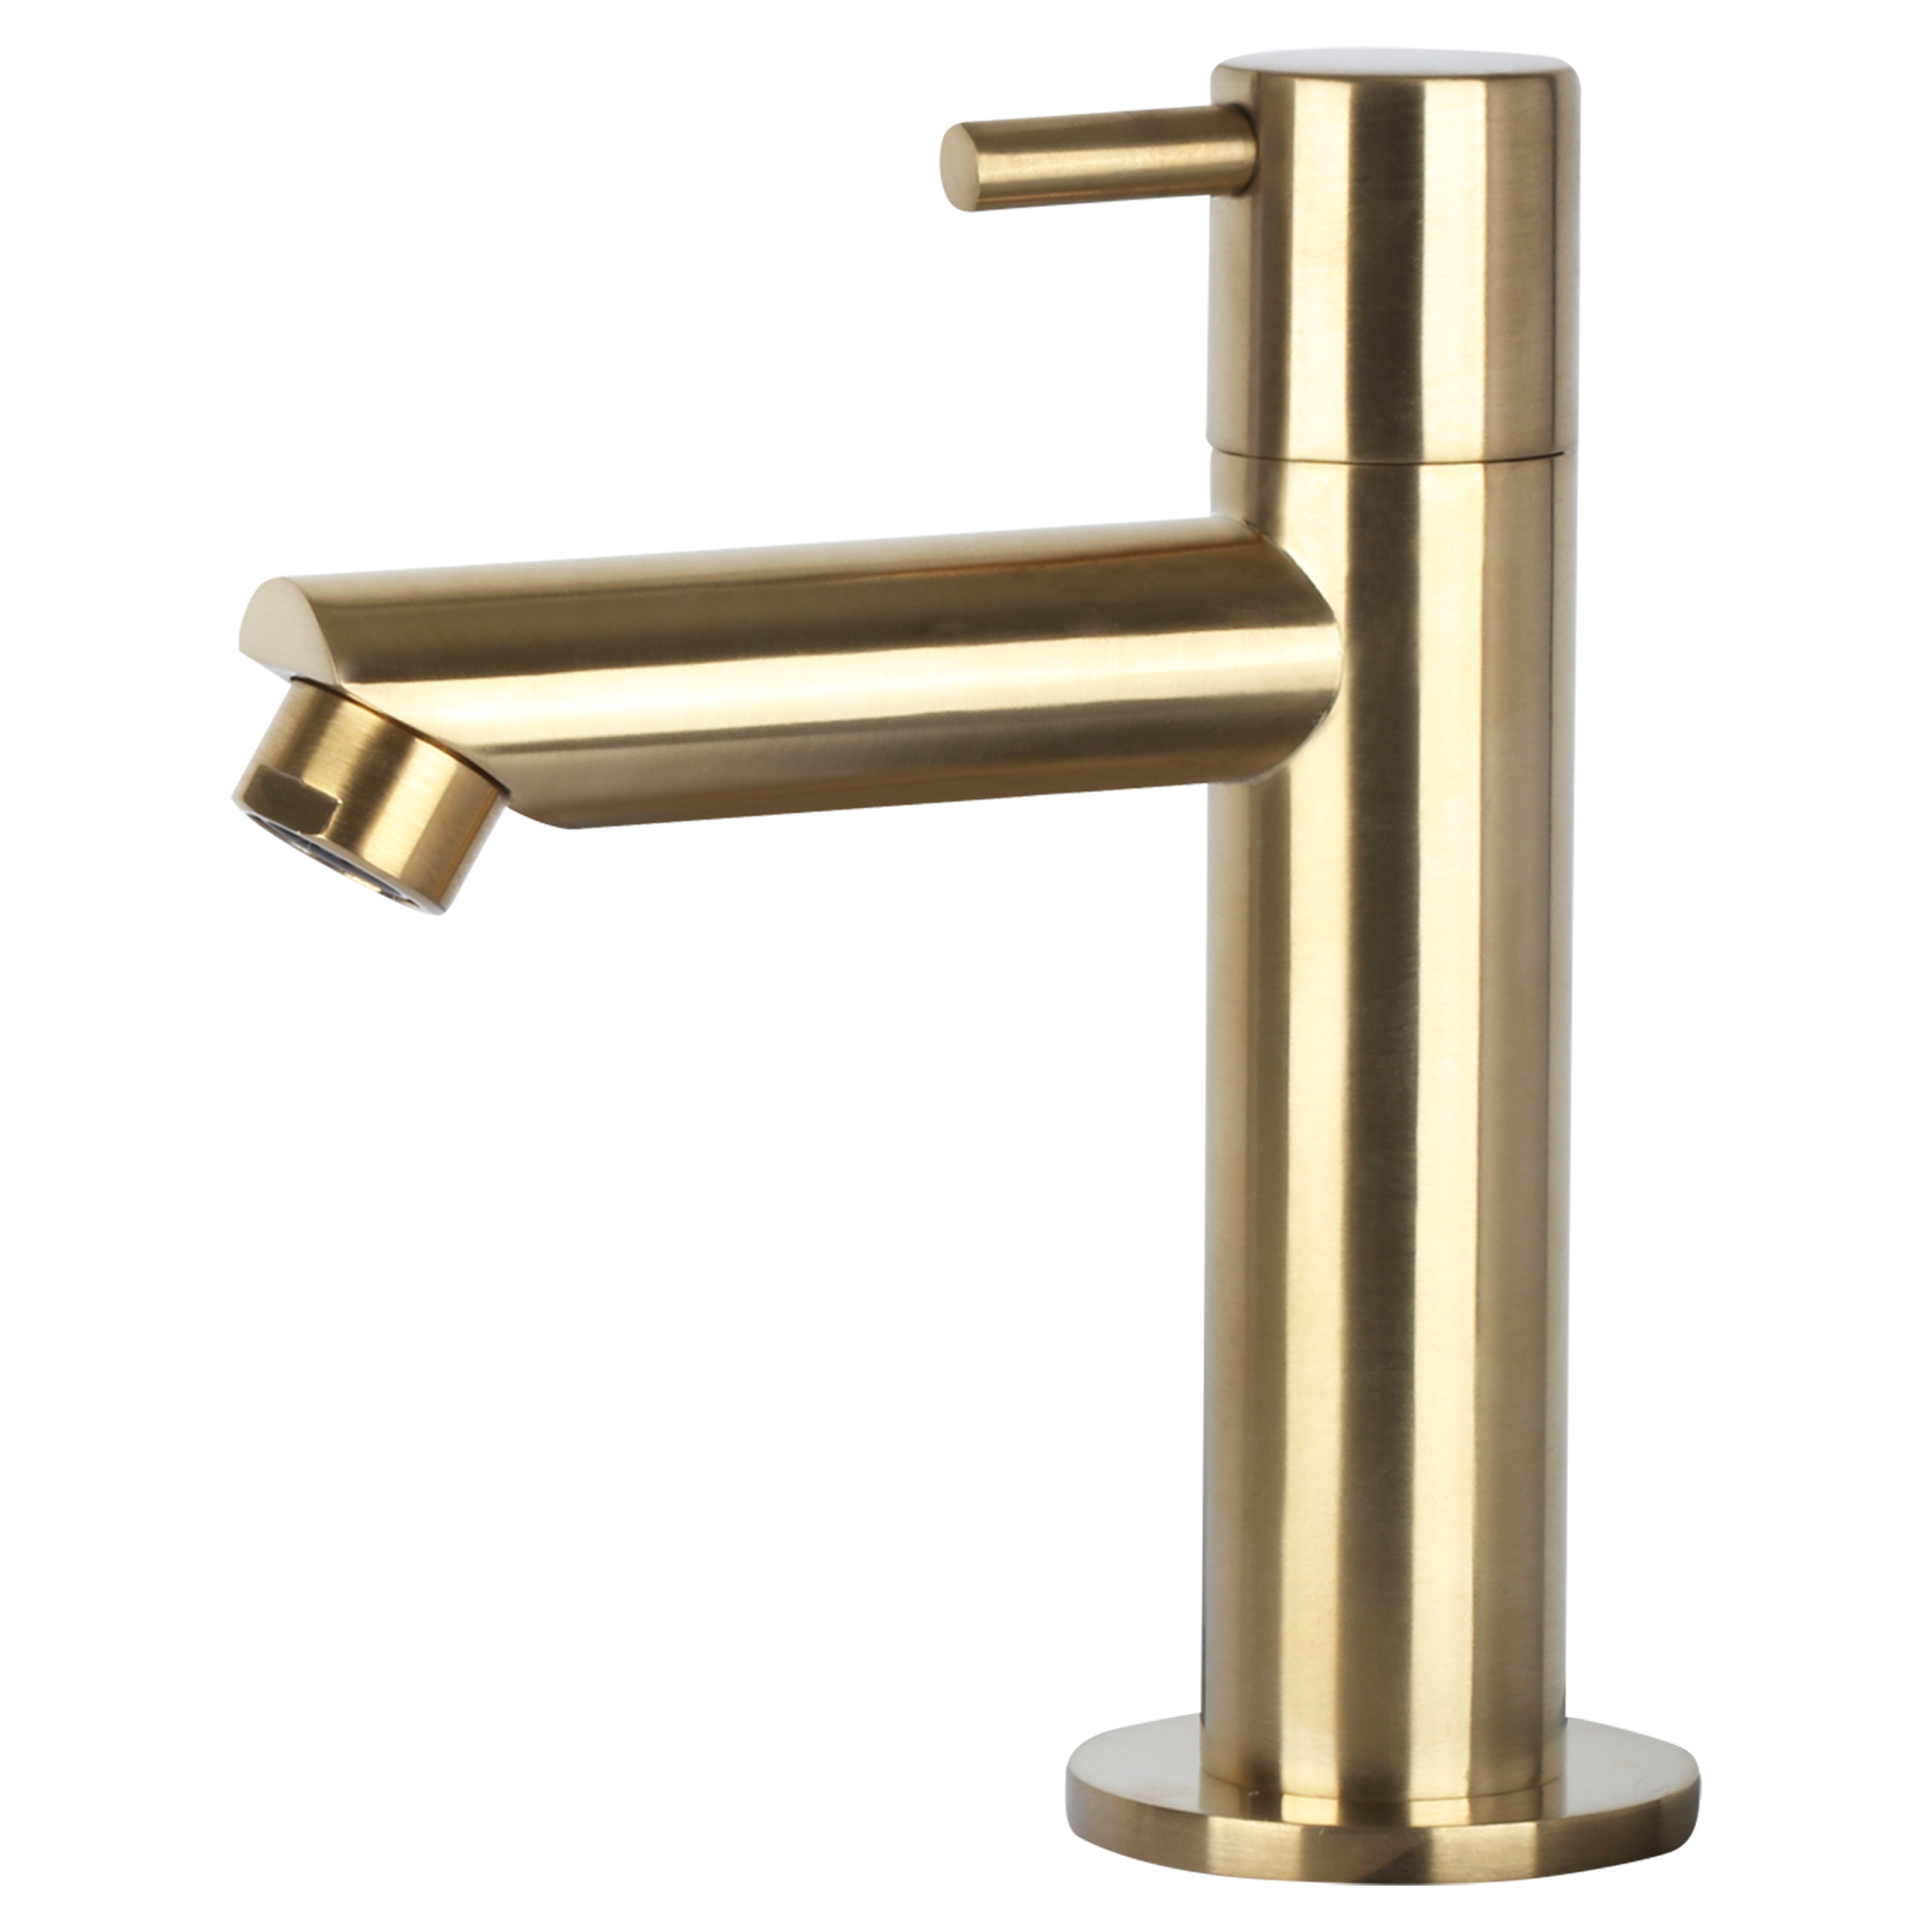 Differnz Ravo fonteinset keramiek kraan recht mat goud 38.5 x 18.5 x 9 cm met handdoekrek